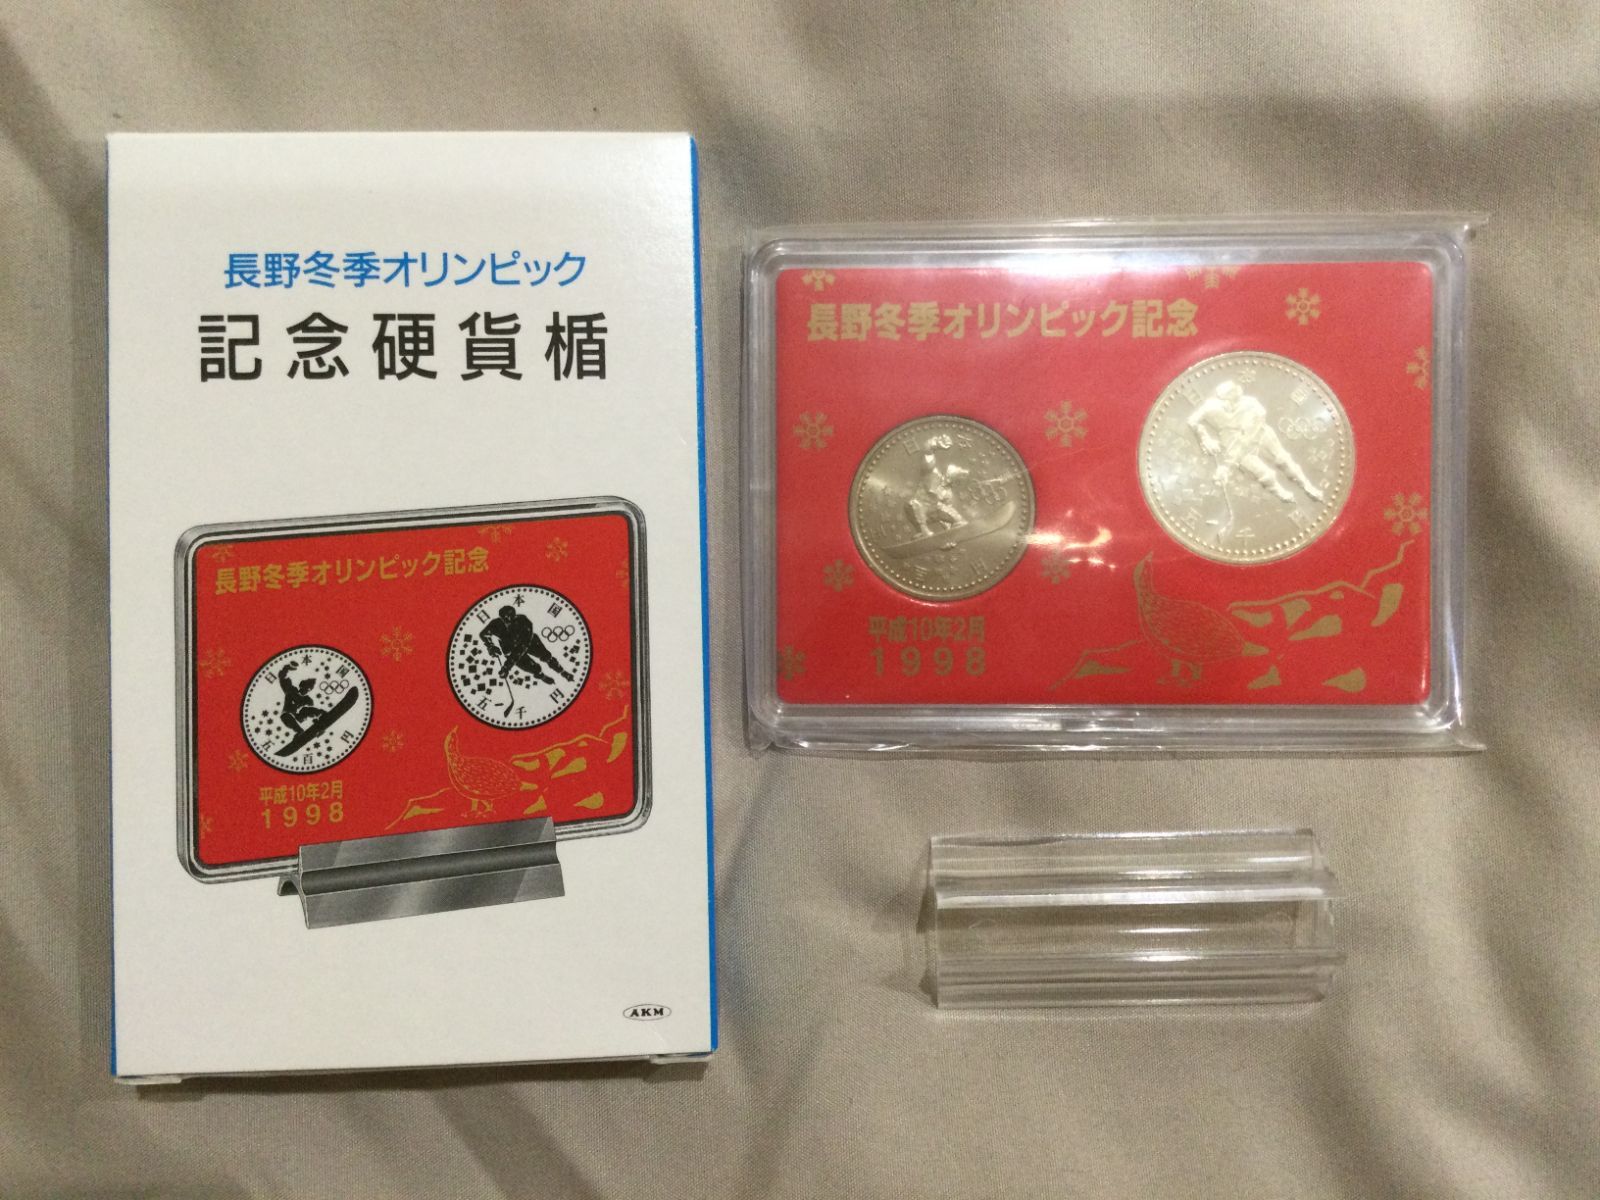 長野冬季オリンピック記念硬貨